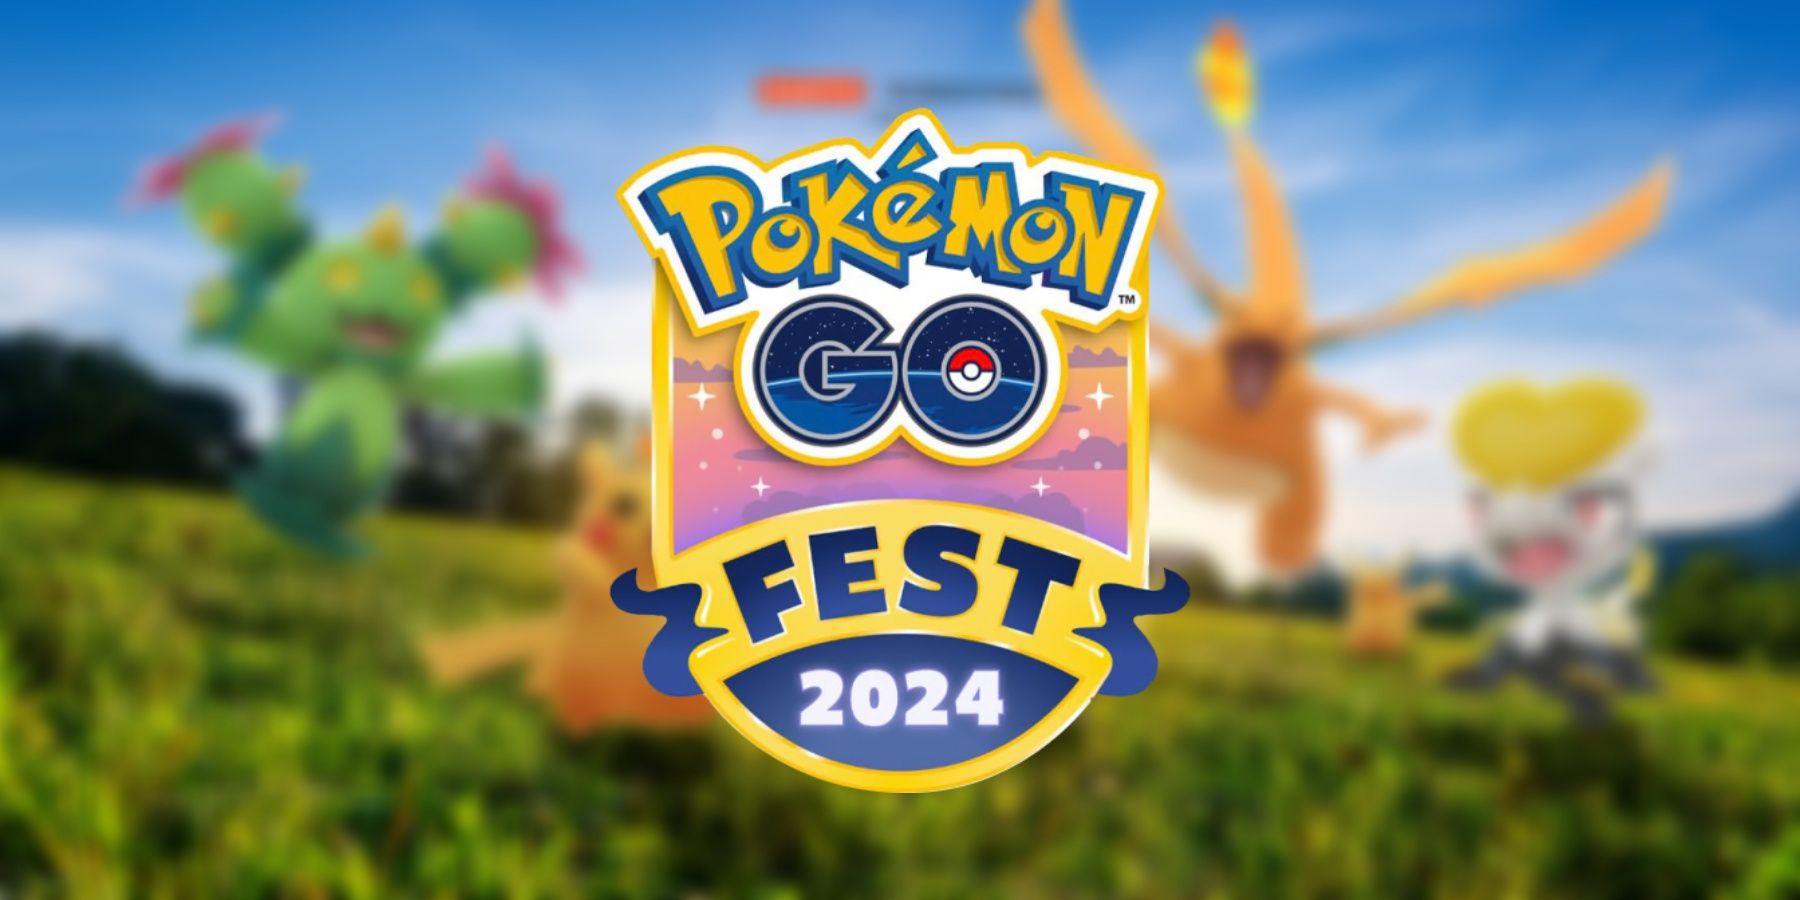 Pokemon GO Confirms Major New Raid Boss for GO Fest 2024